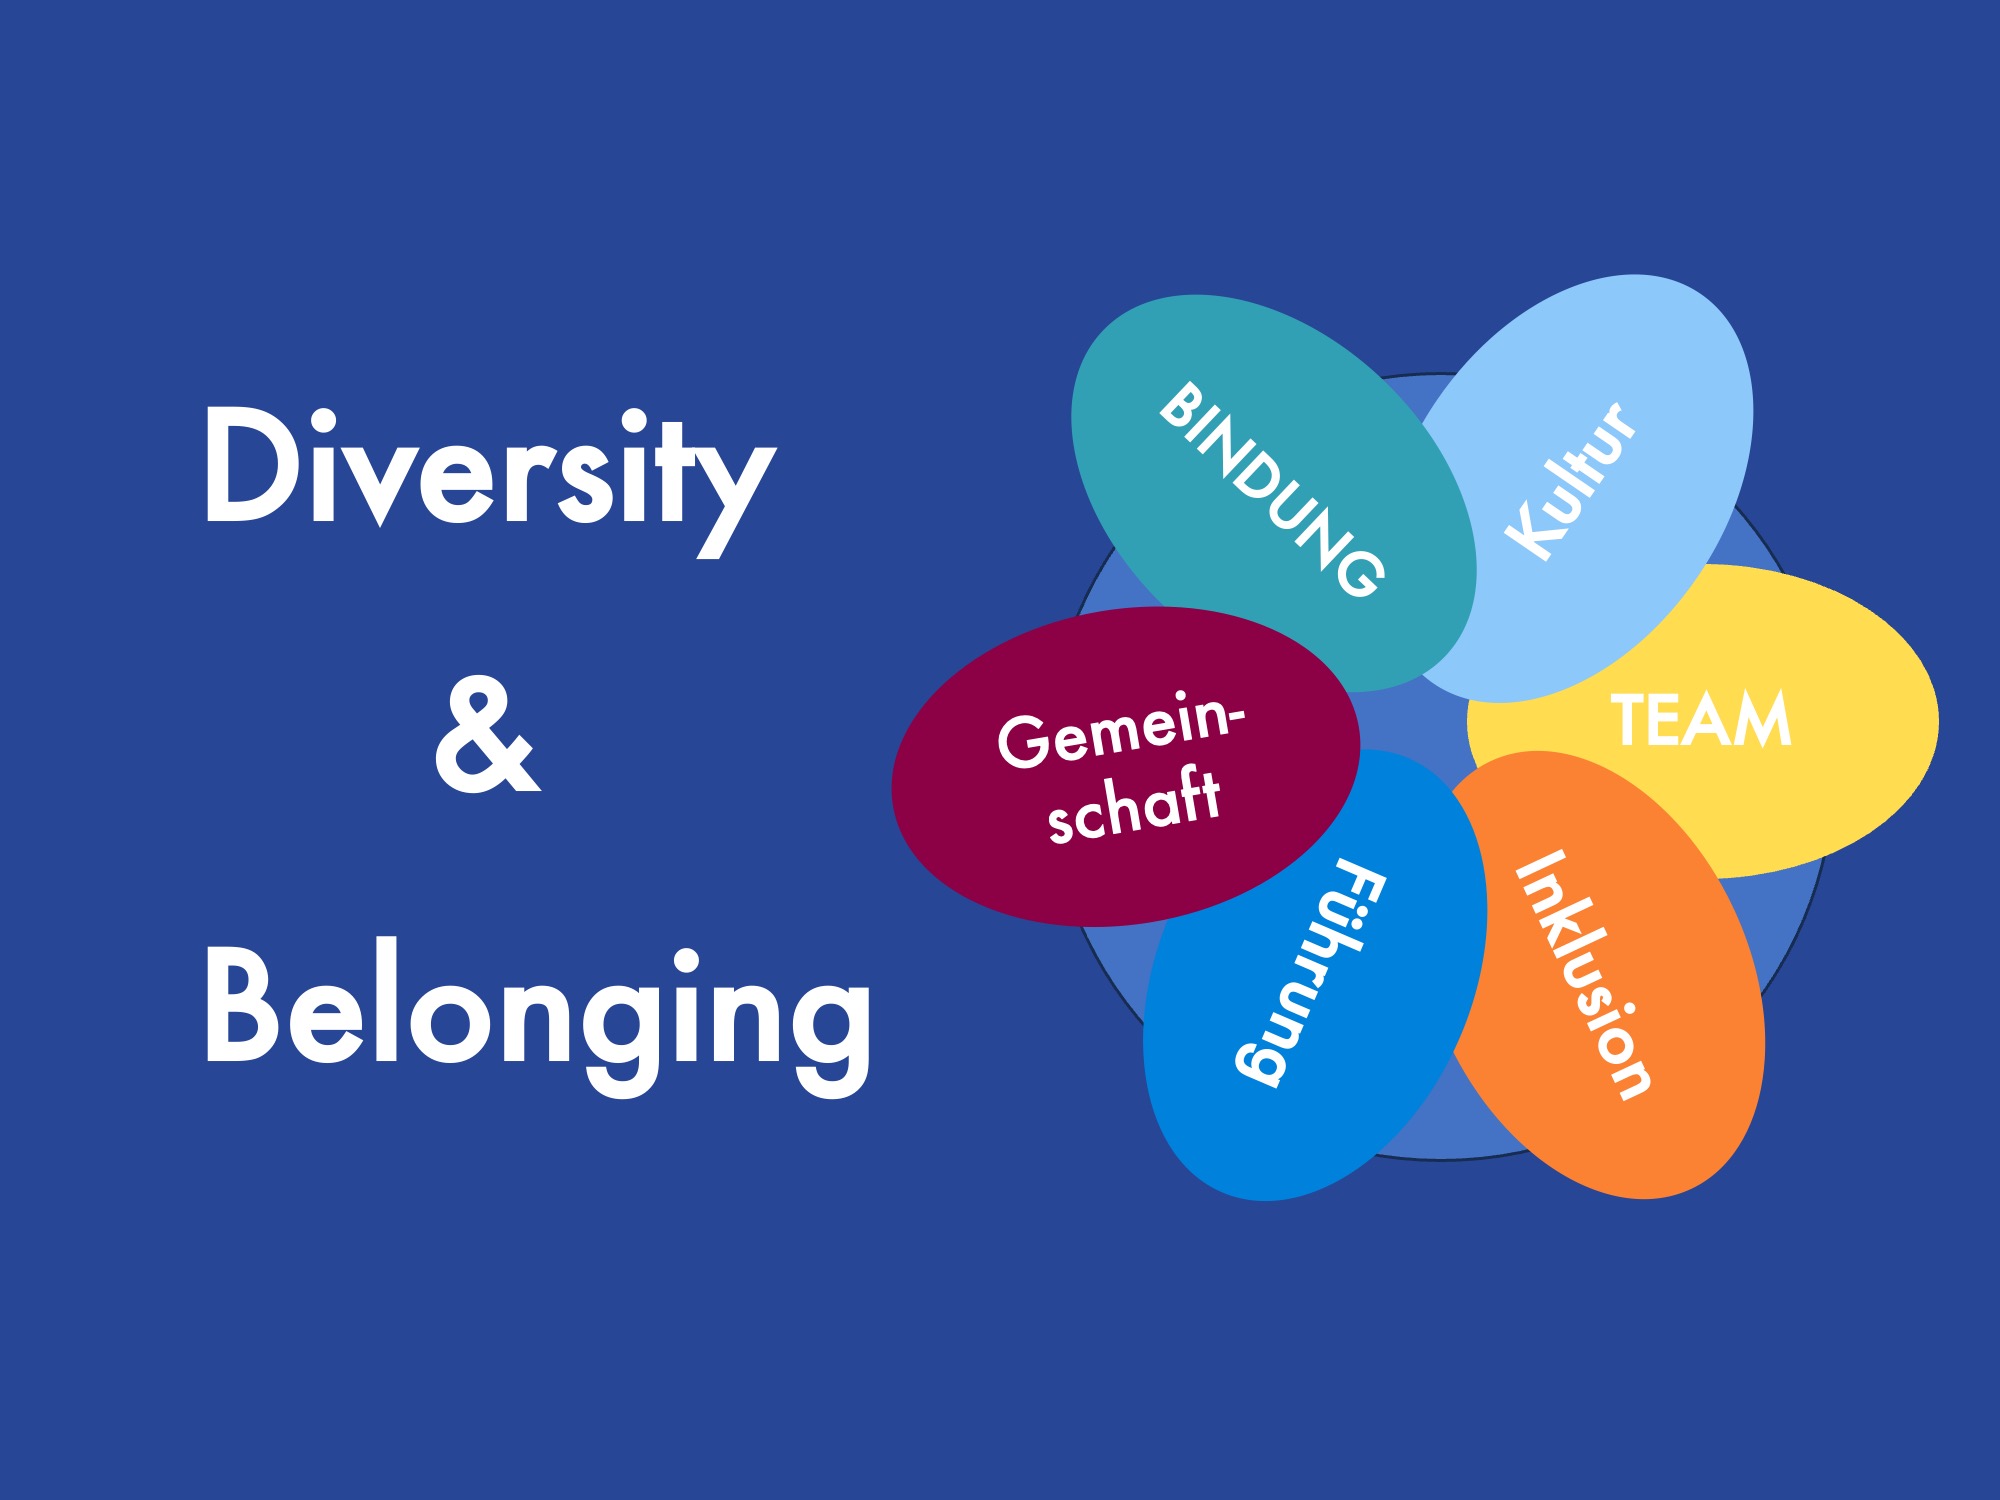 Diversity & Belonging